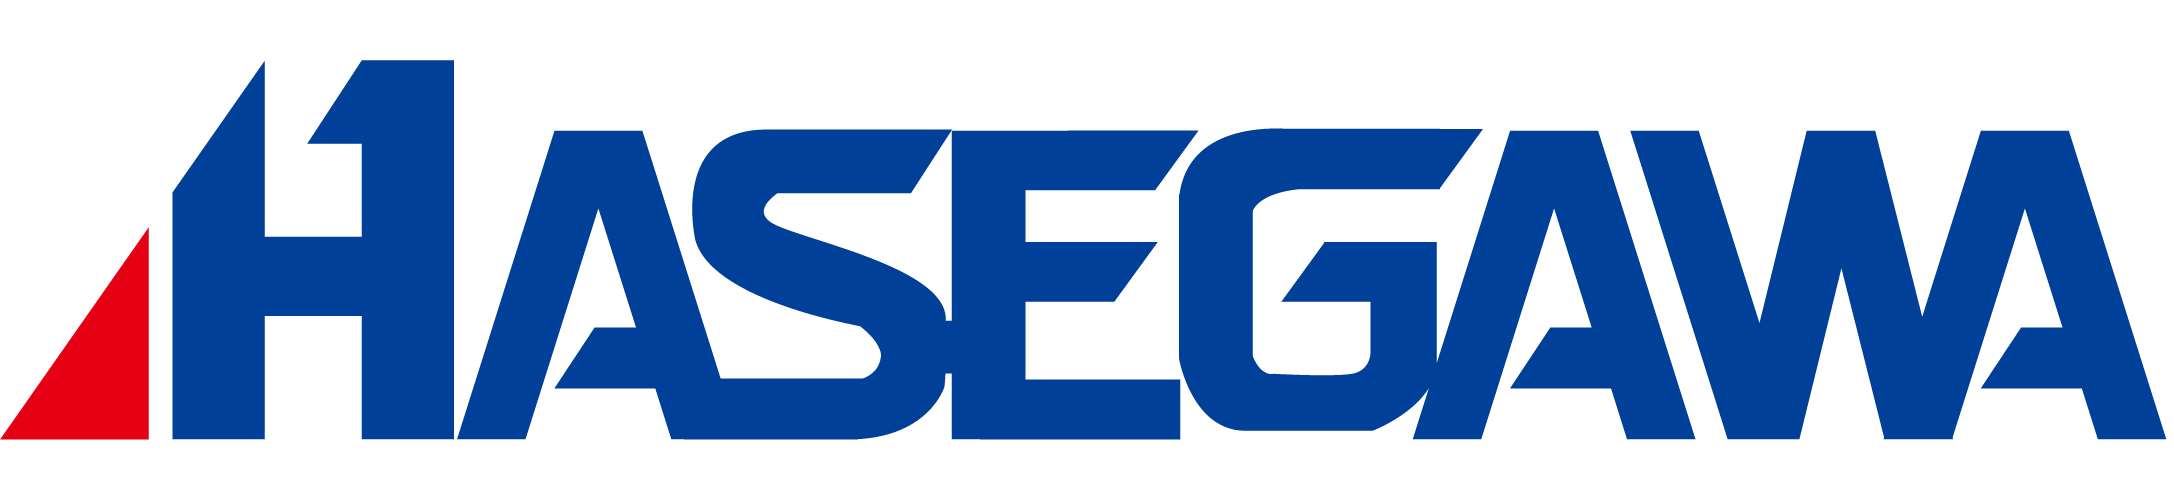 logo-hasegawa